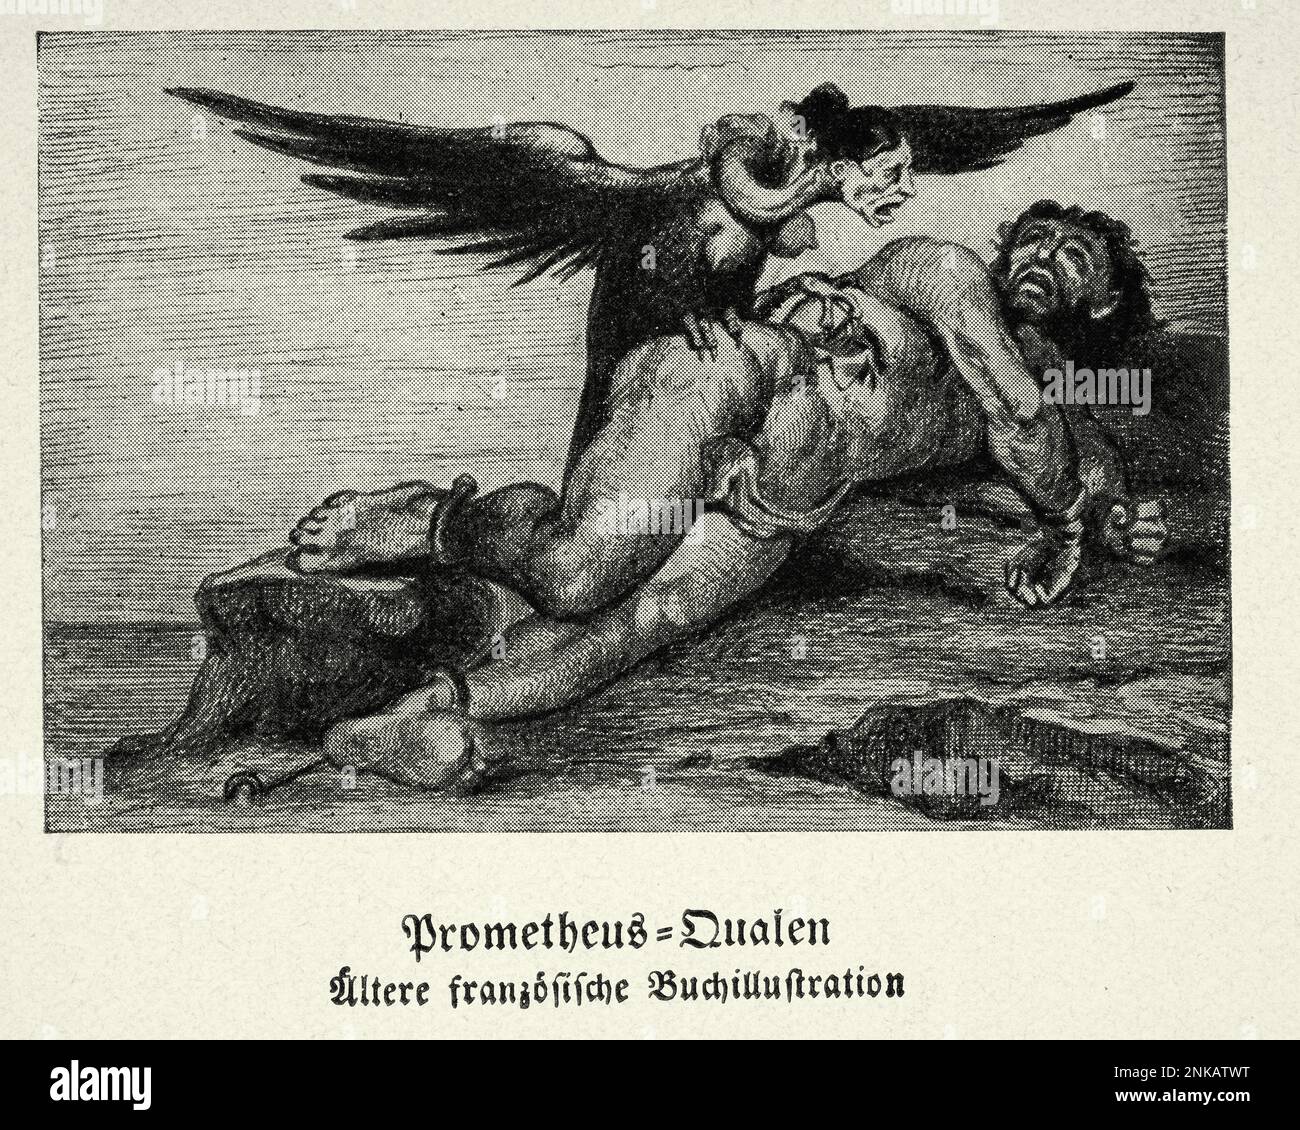 Mythologie grecque, Prométhée en agonie, un Dieu Titan du feu, Harpy mangeant son foie manger, illustration ancienne Banque D'Images